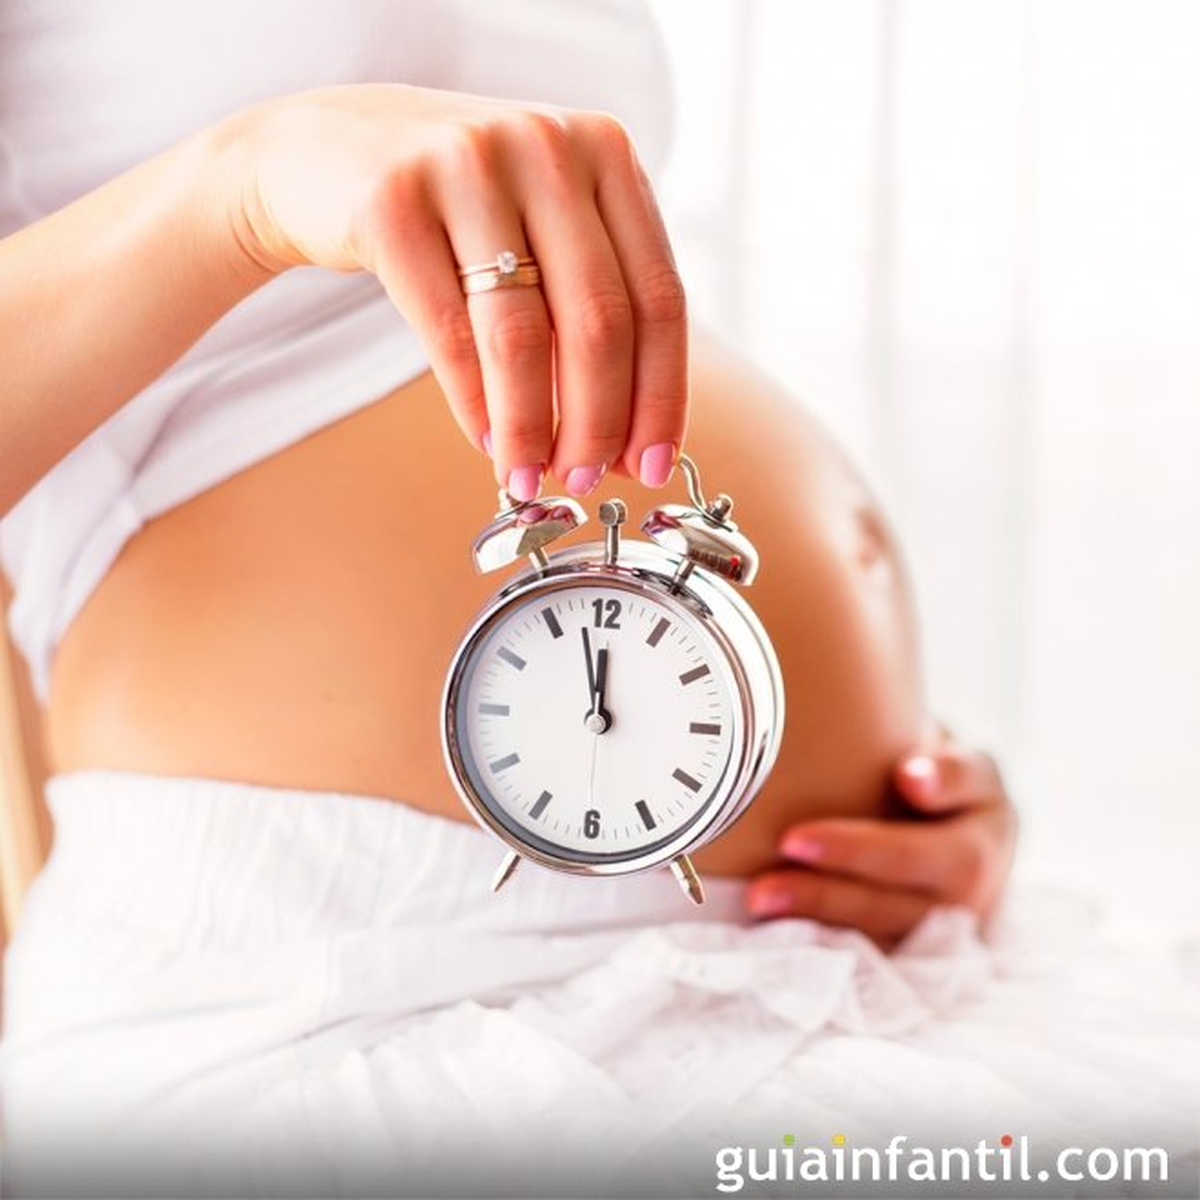 Embarazo y parto: ¿Dulce espera?